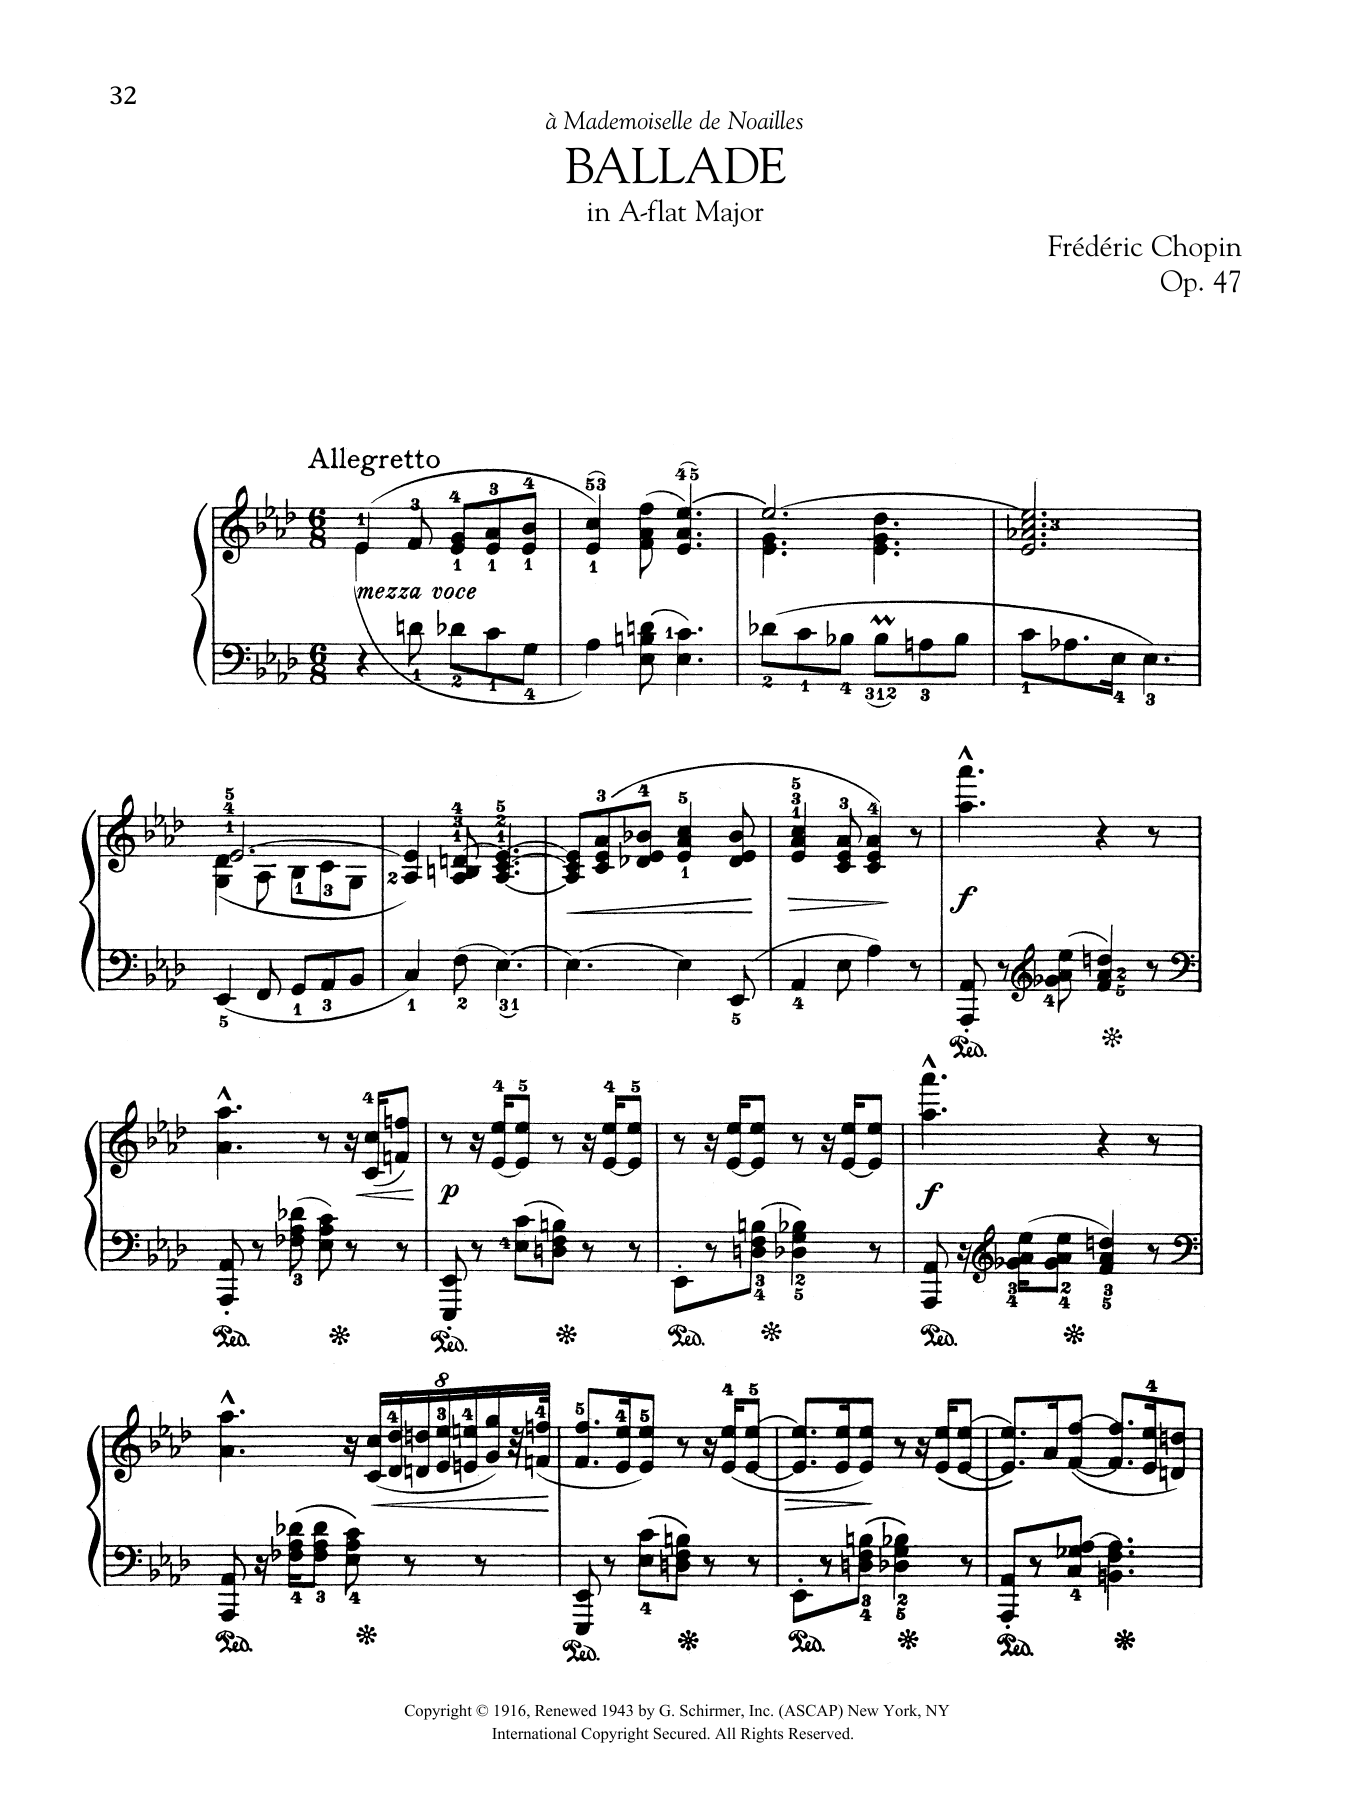 Ballade in A-flat Major, Op. 47 sheet music